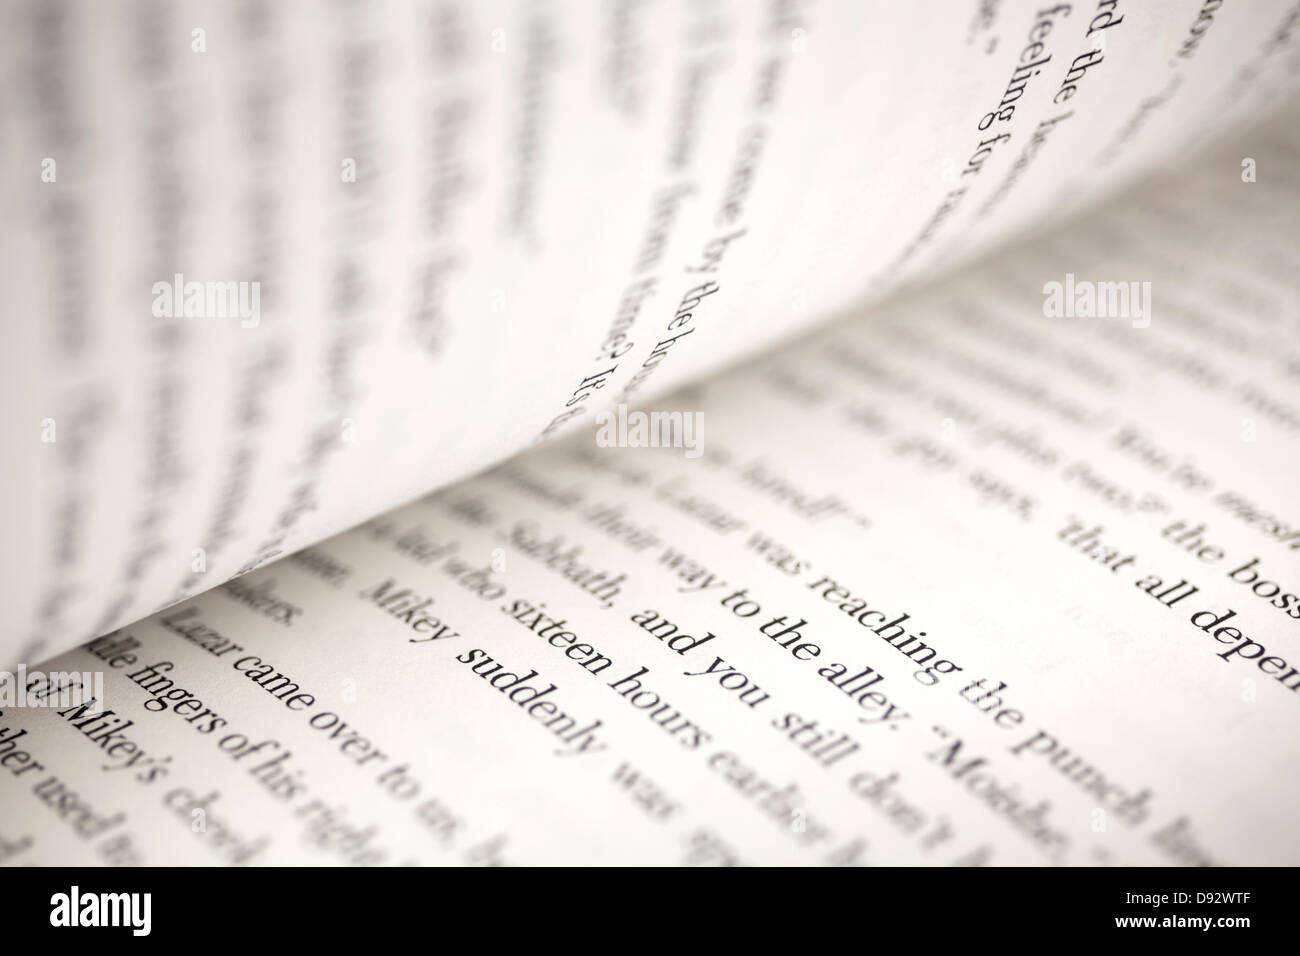 Texte sur les pages d'un livre ouvert, extreme close-up Banque D'Images